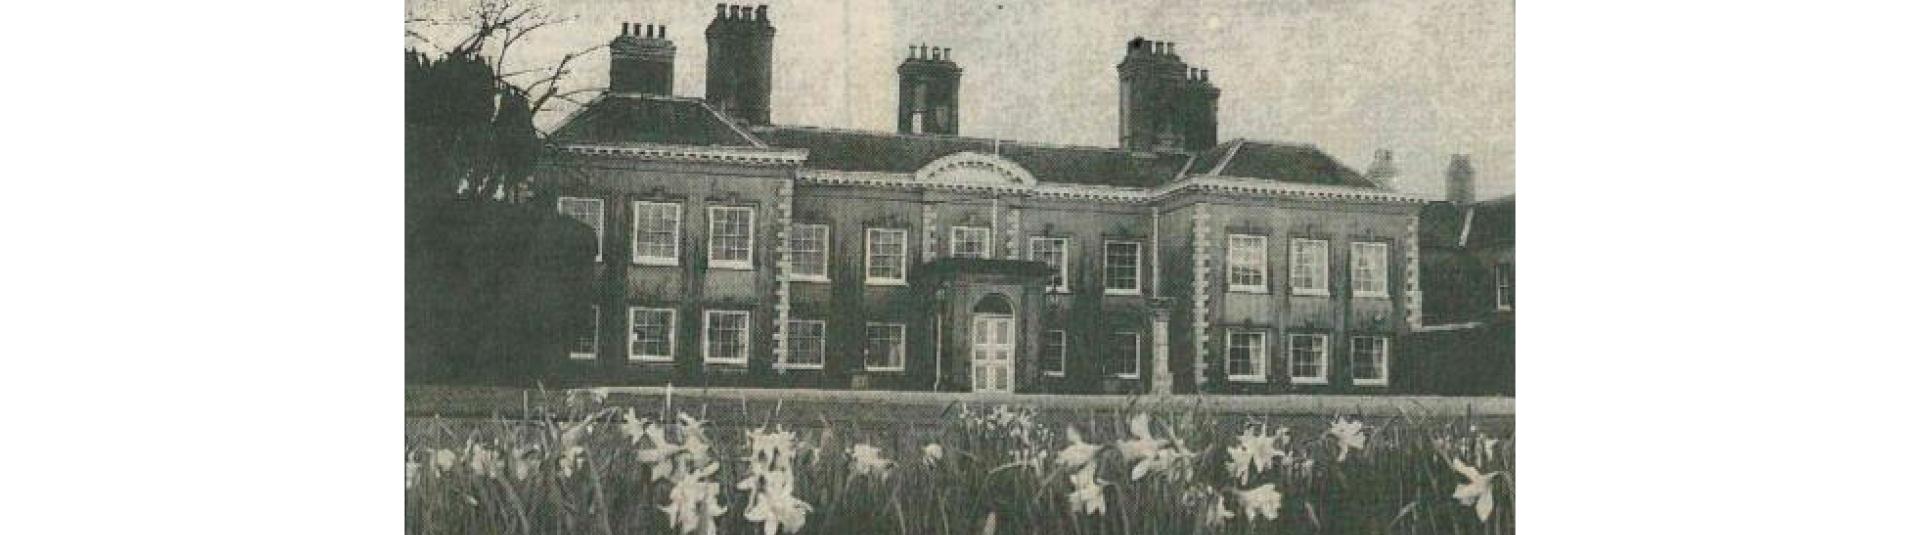 Ilsington House 